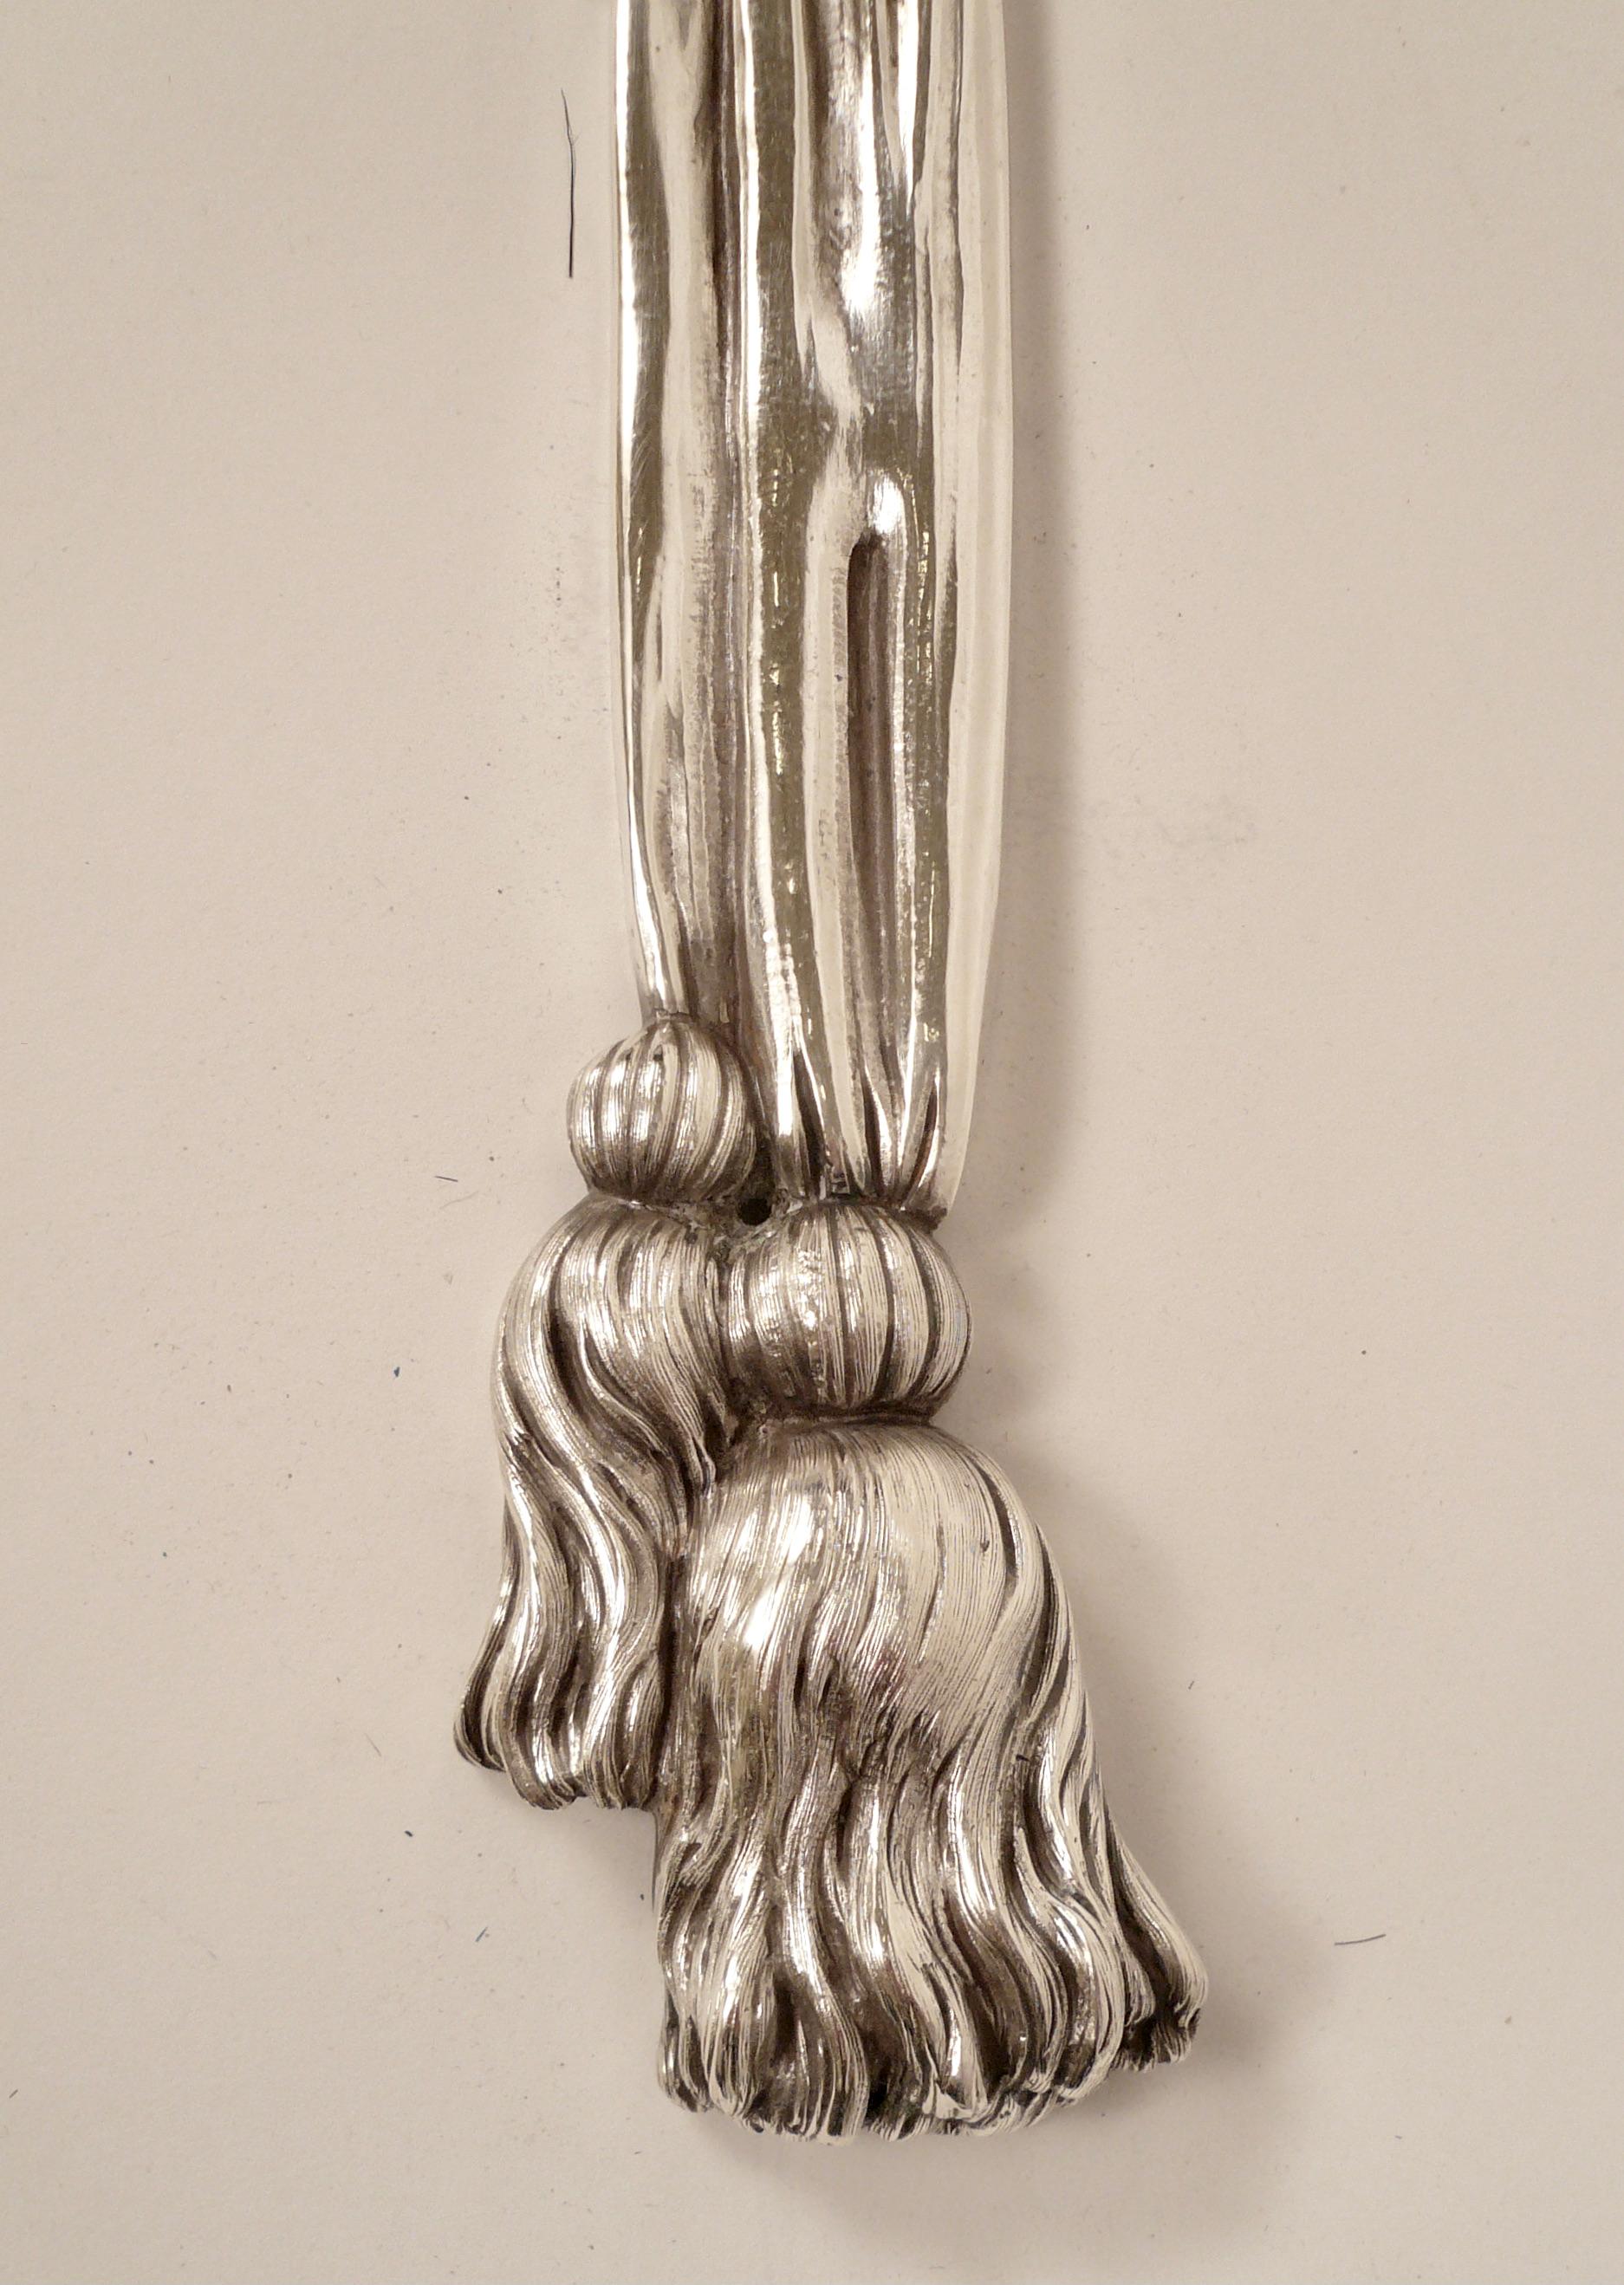 Dieses beeindruckende Paar Caldwell-Leuchter, das an die skulpturalen Schnitzereien von Grinling Gibbons erinnert, weist Schleifen, Bänder und Quasten auf. Zwischen den Bändern sind verschiedene Obstmotive gruppiert.
Das originale Silber ist in